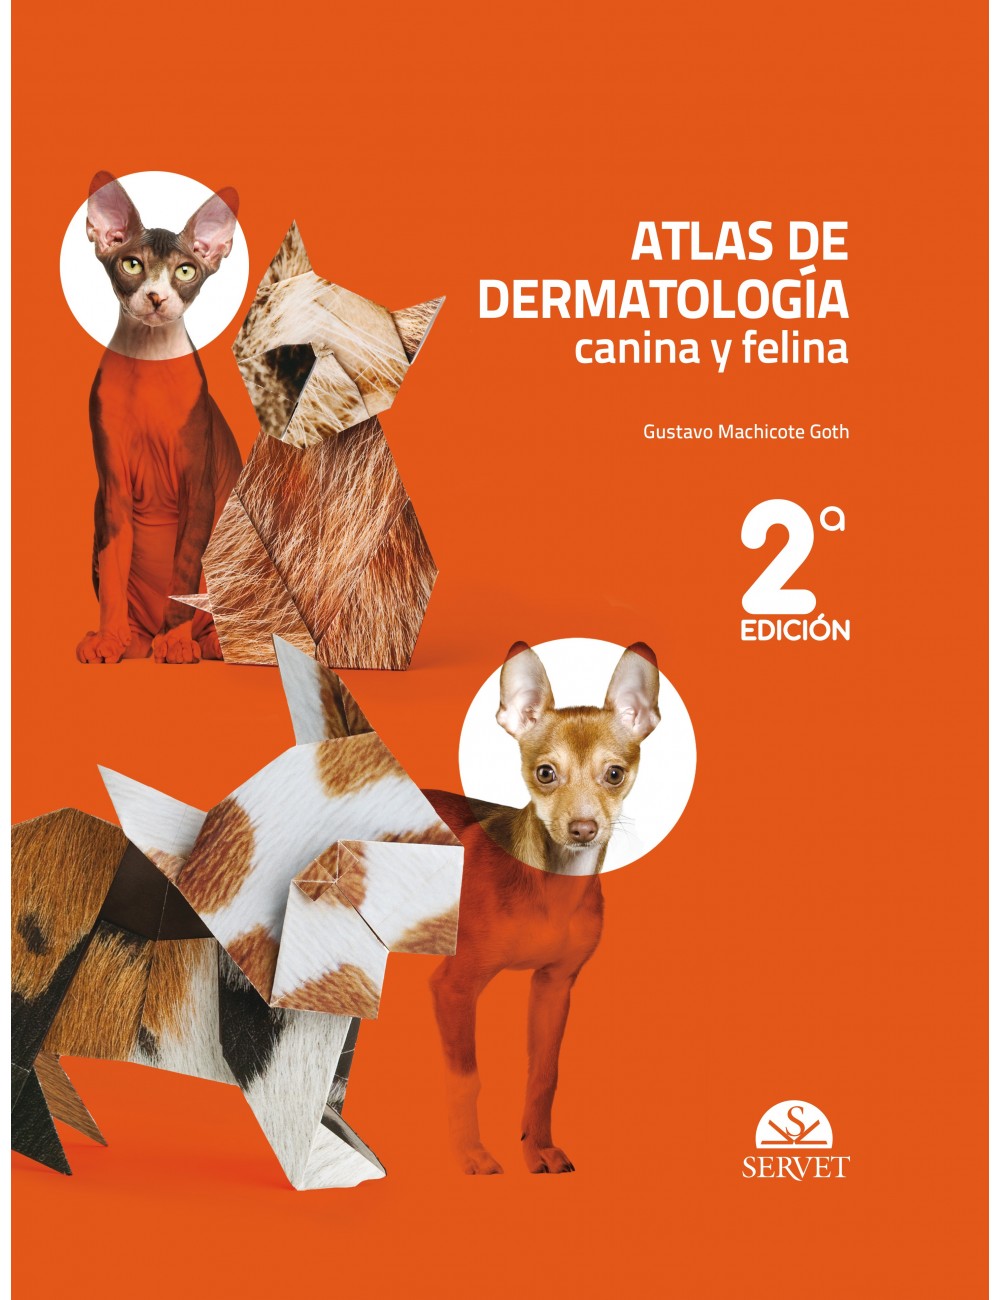 Atlas de dermatología canina y felina, 2 ª Edición